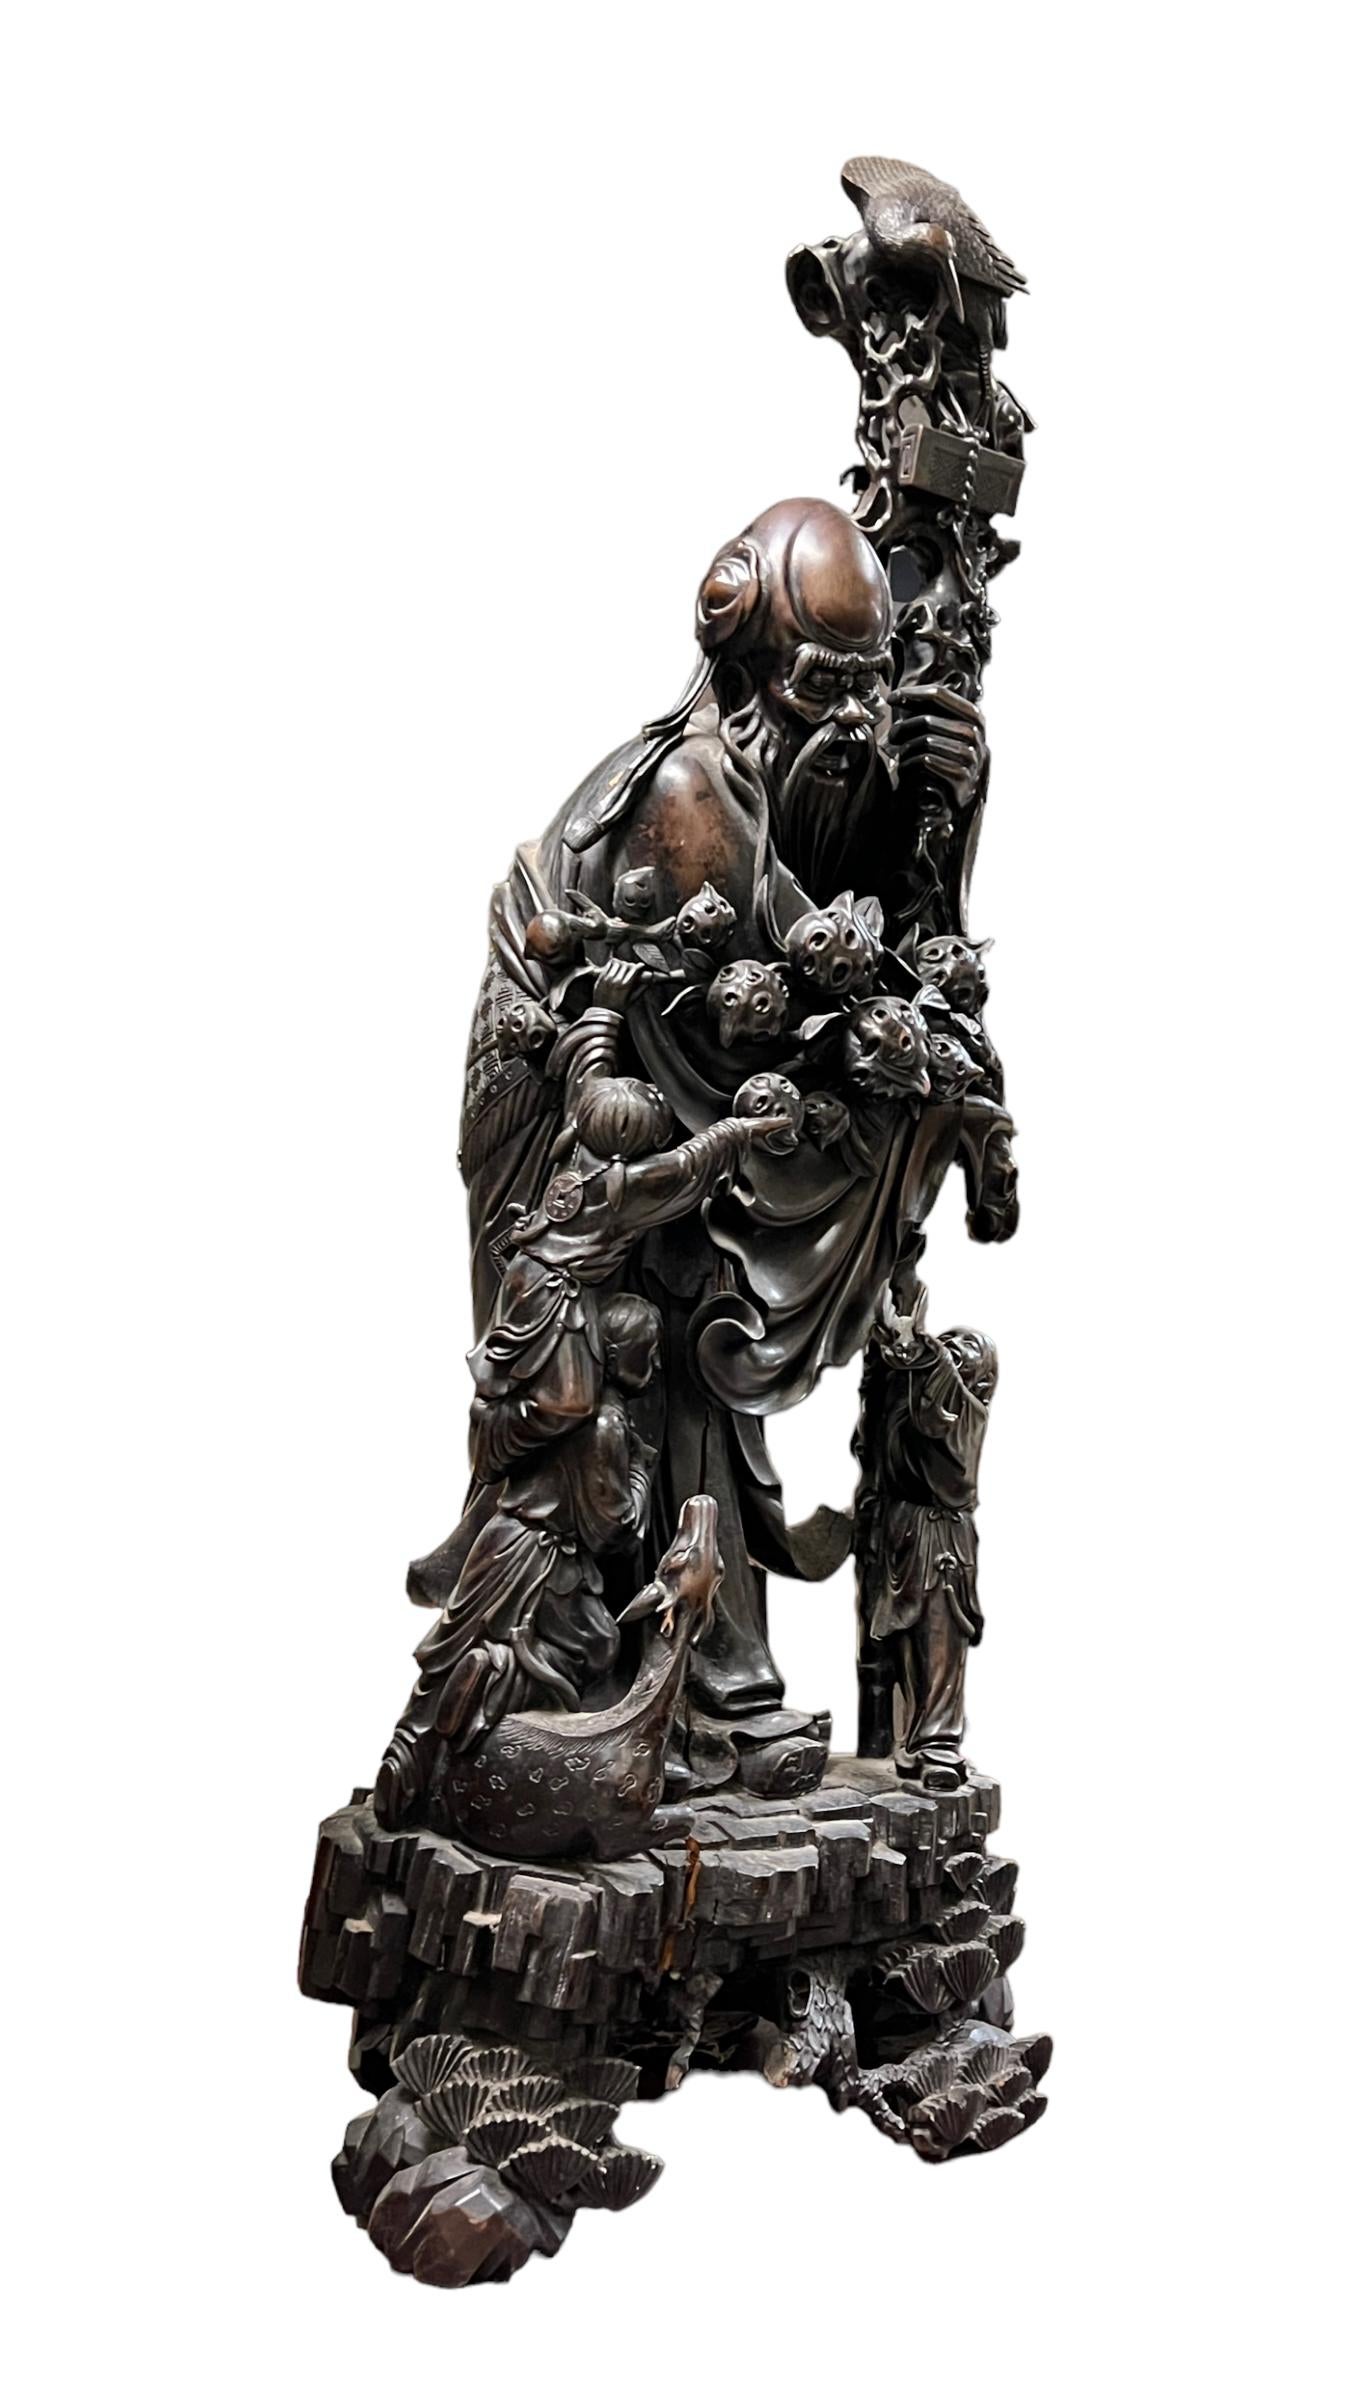 Sehr groß und fein geschnitzt  Chinesische daoistische Gott der Langlebigkeit Holzstatue Darstellung Shou Lao (Shou Xing) Messung 44,5 in (113 cm) hoch.